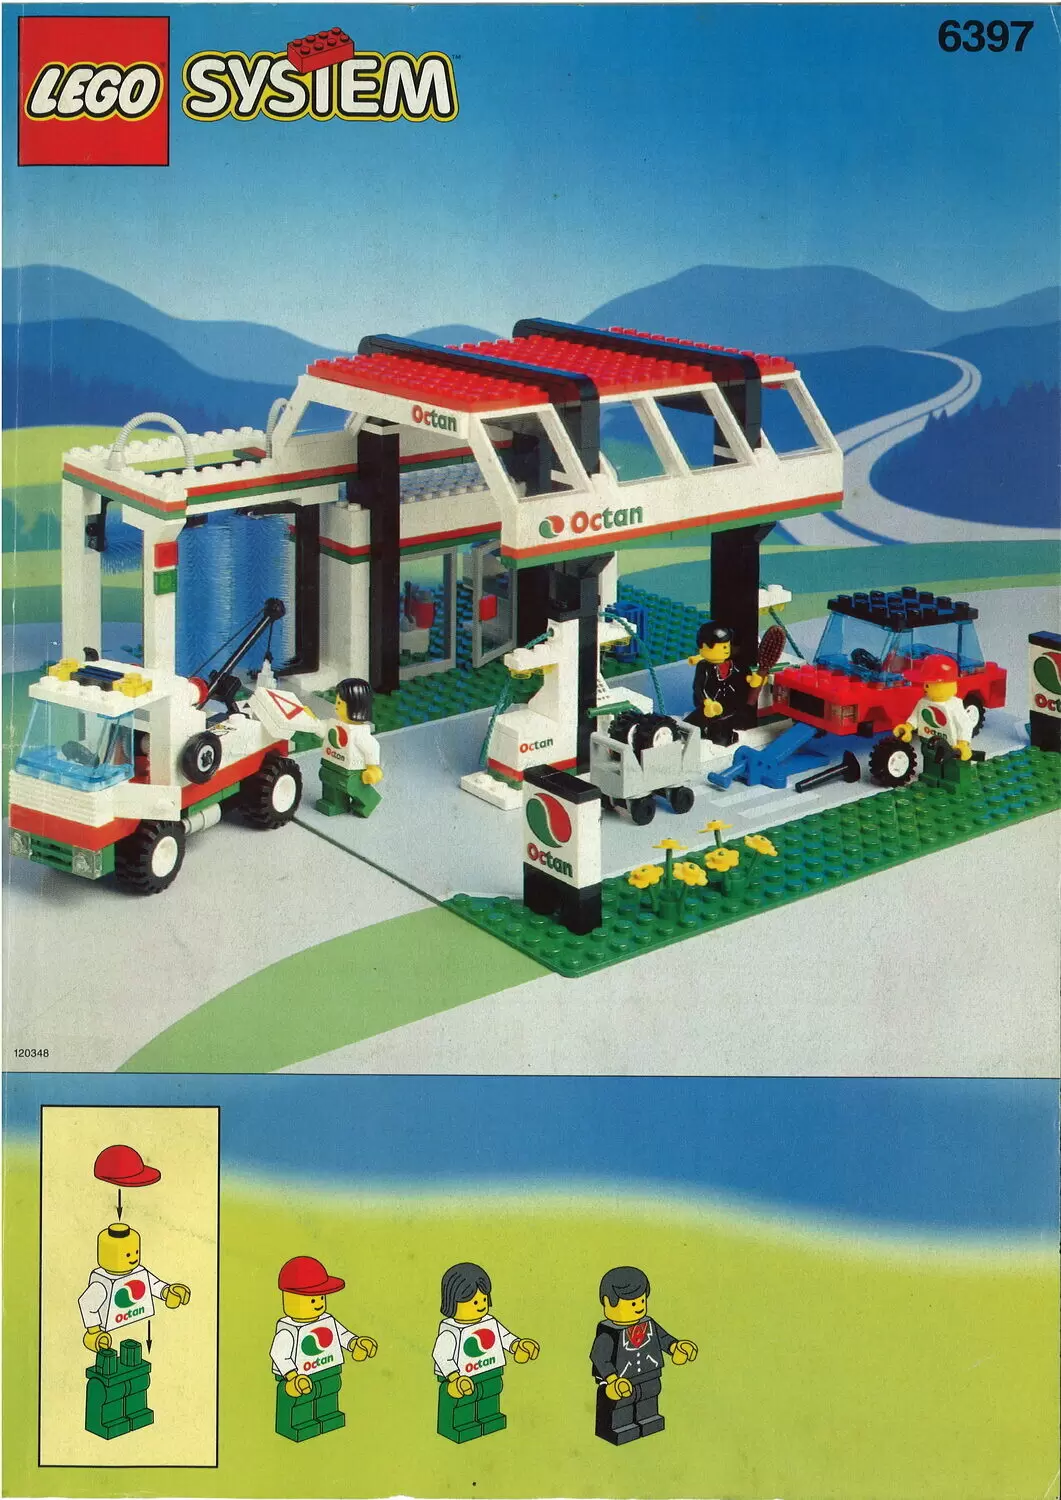 Stræbe Reparation mulig udstilling Gas 'n' Wash Express - LEGO System set 6397